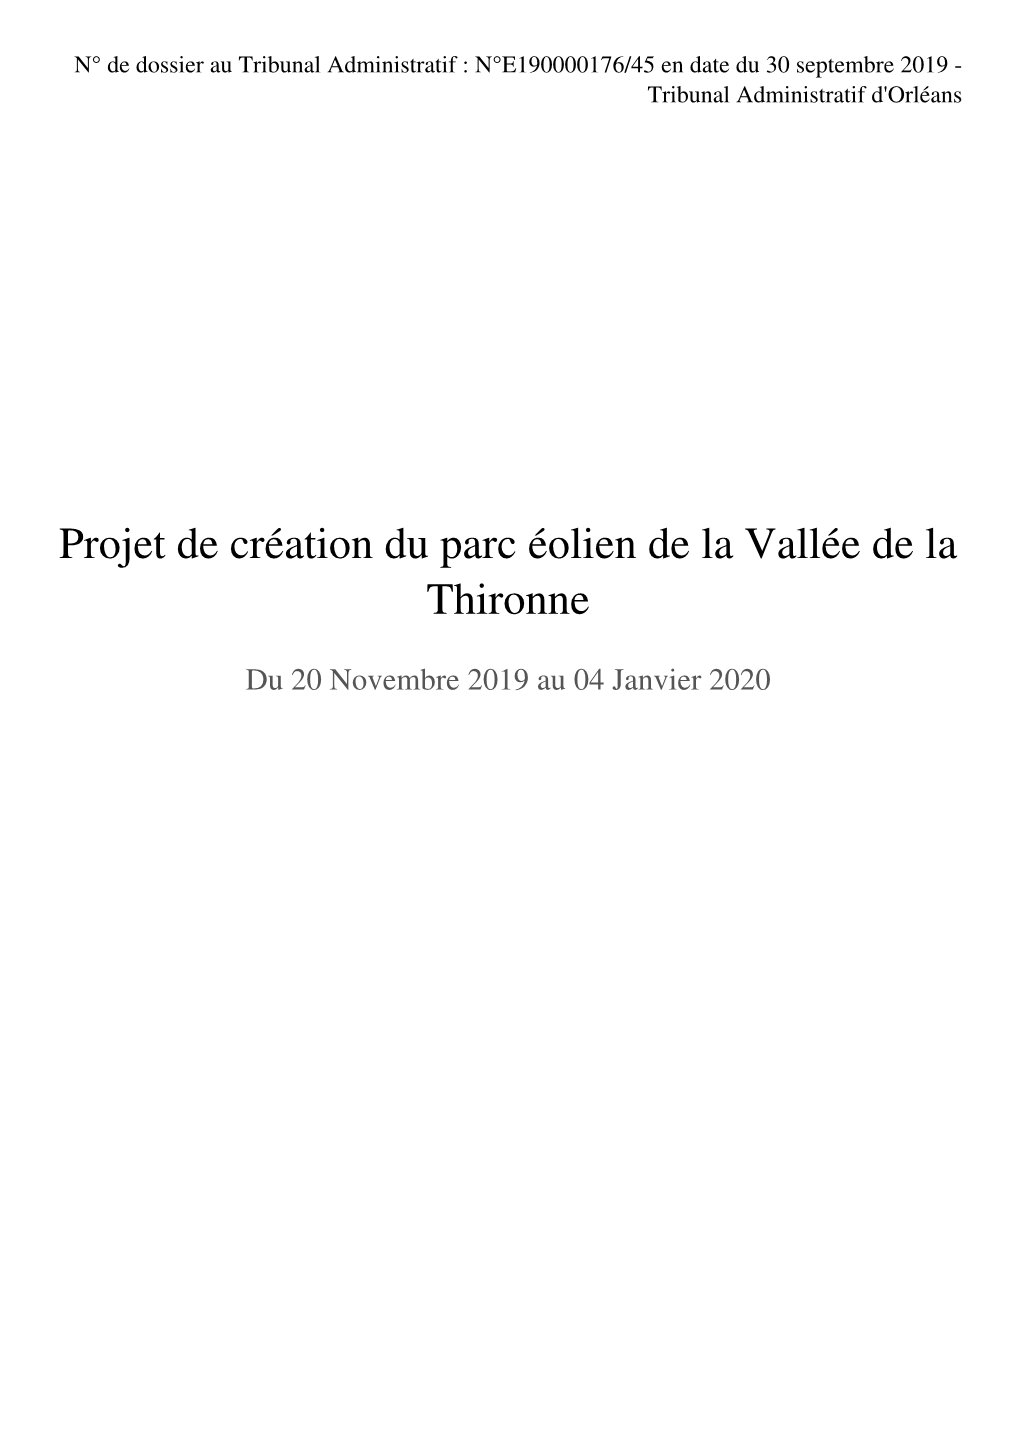 Projet De Création Du Parc Éolien De La Vallée De La Thironne